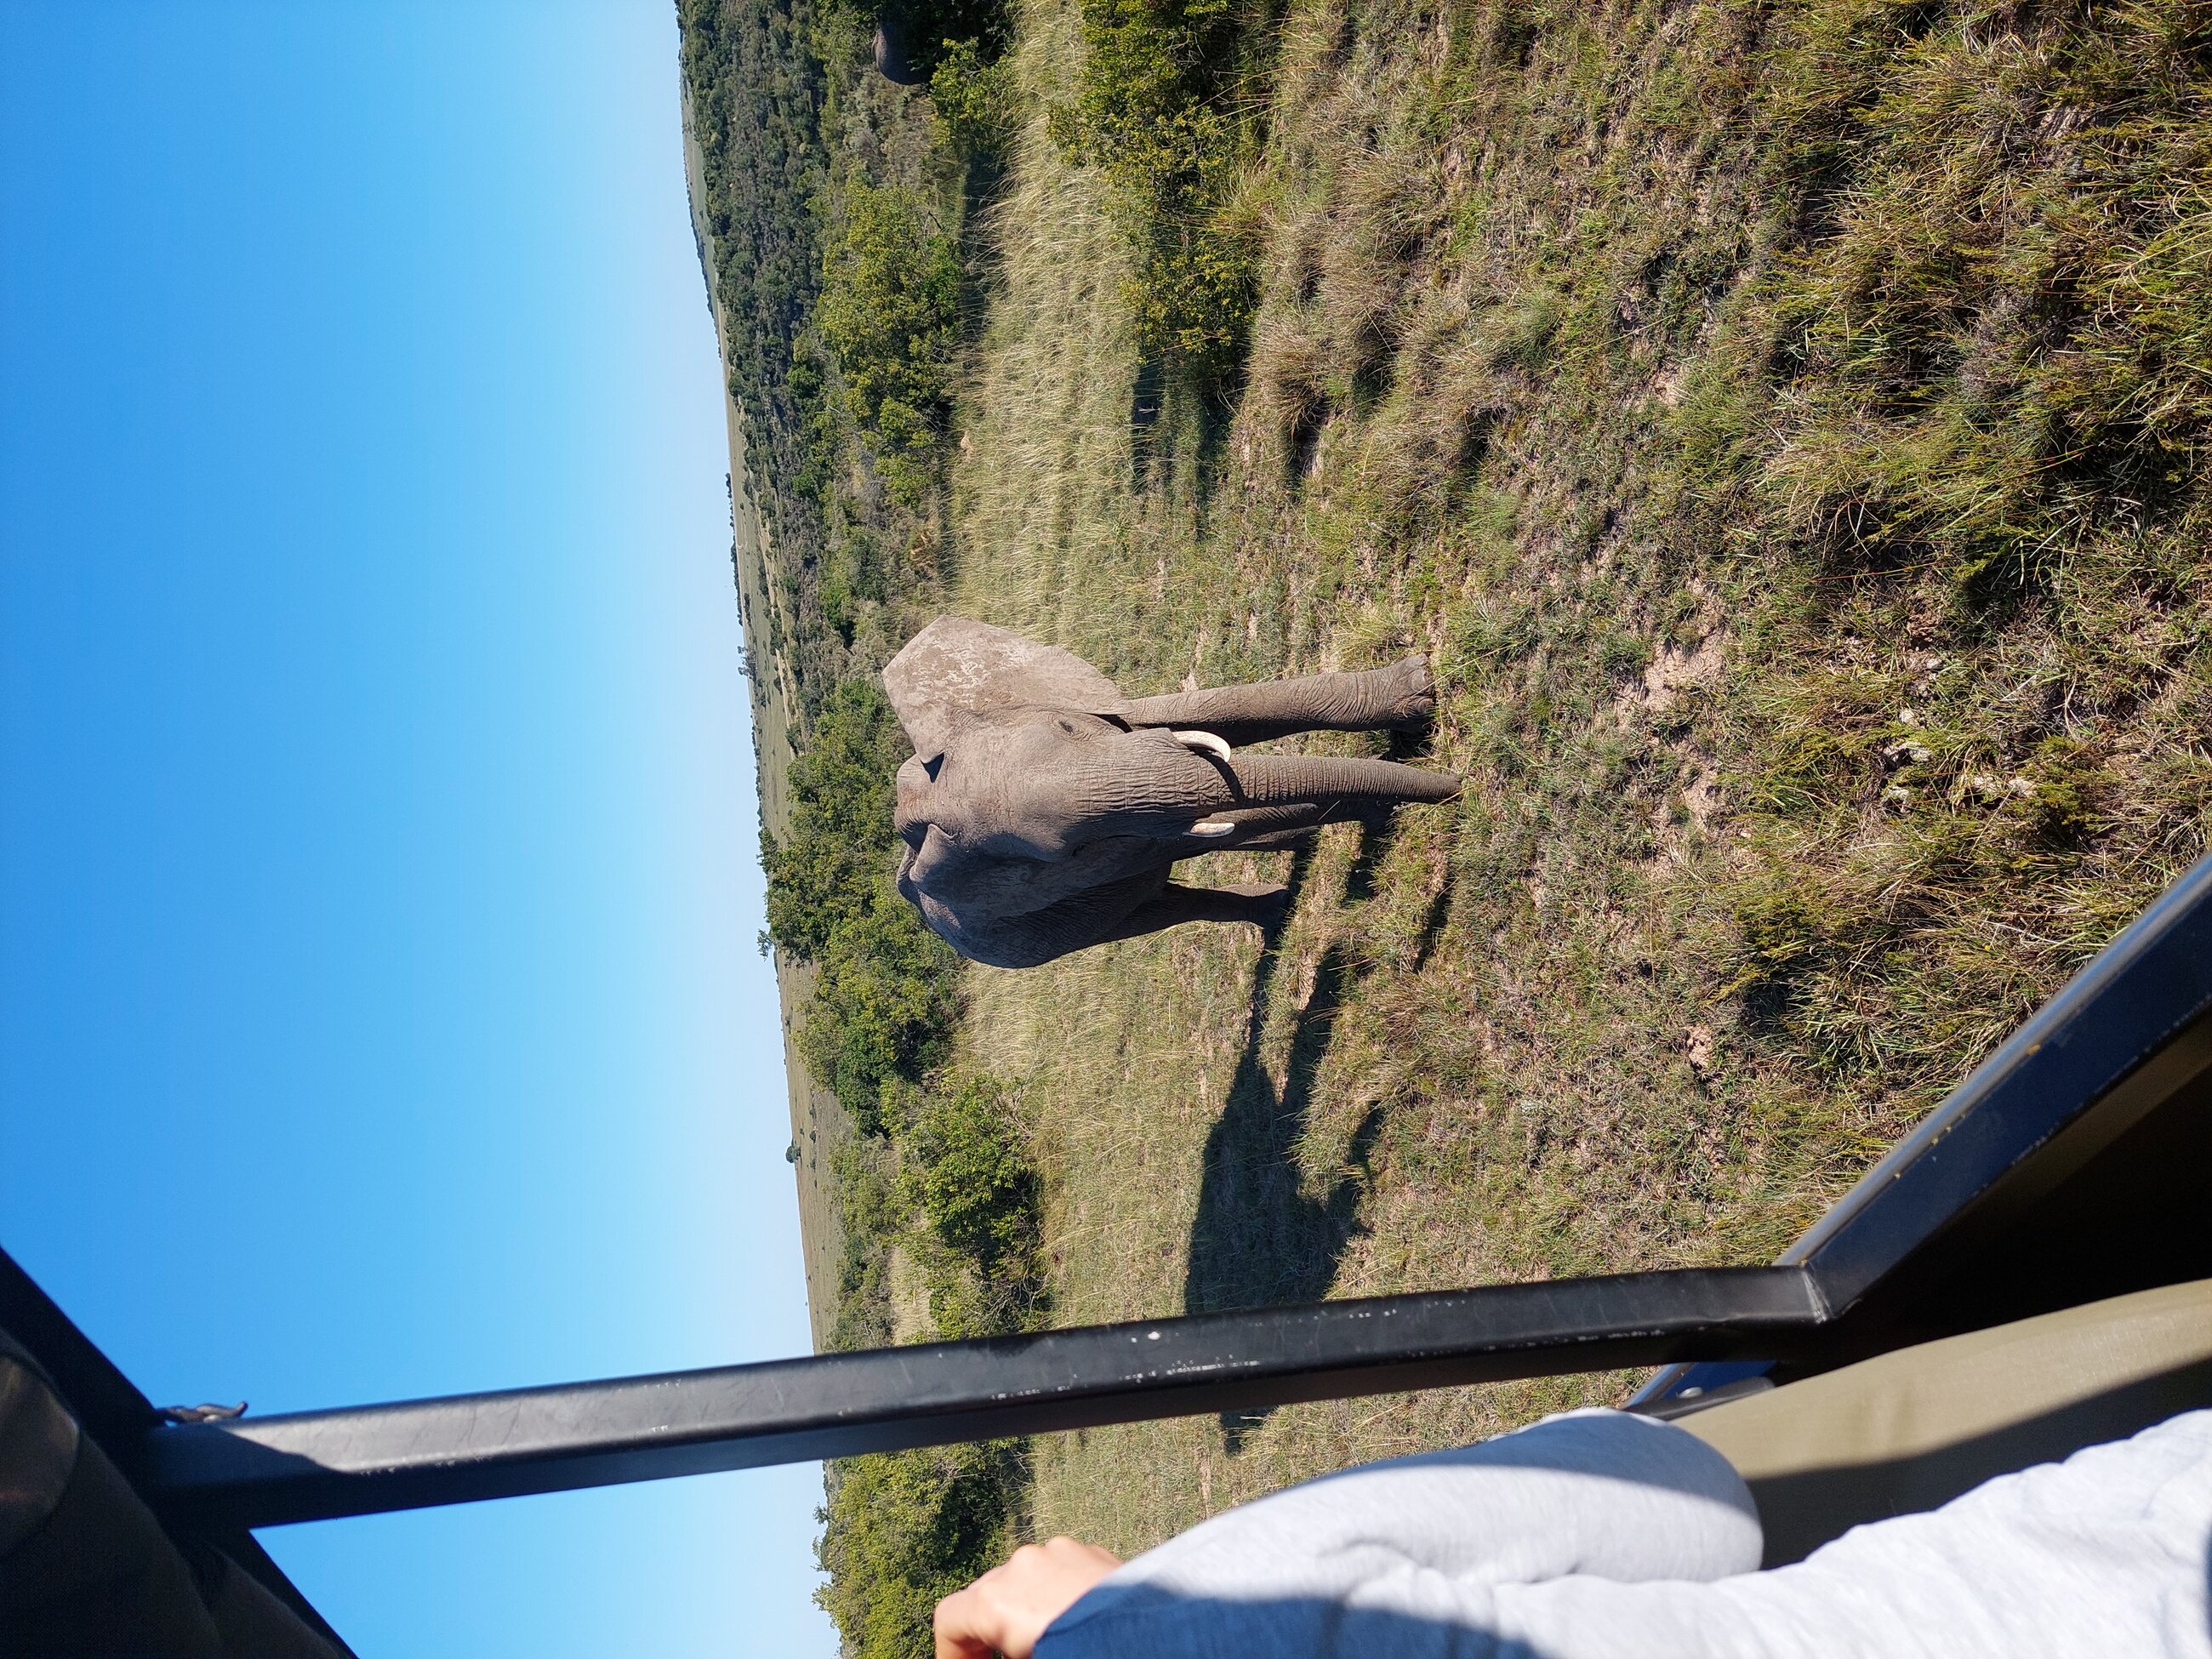 Elephant close encounter 